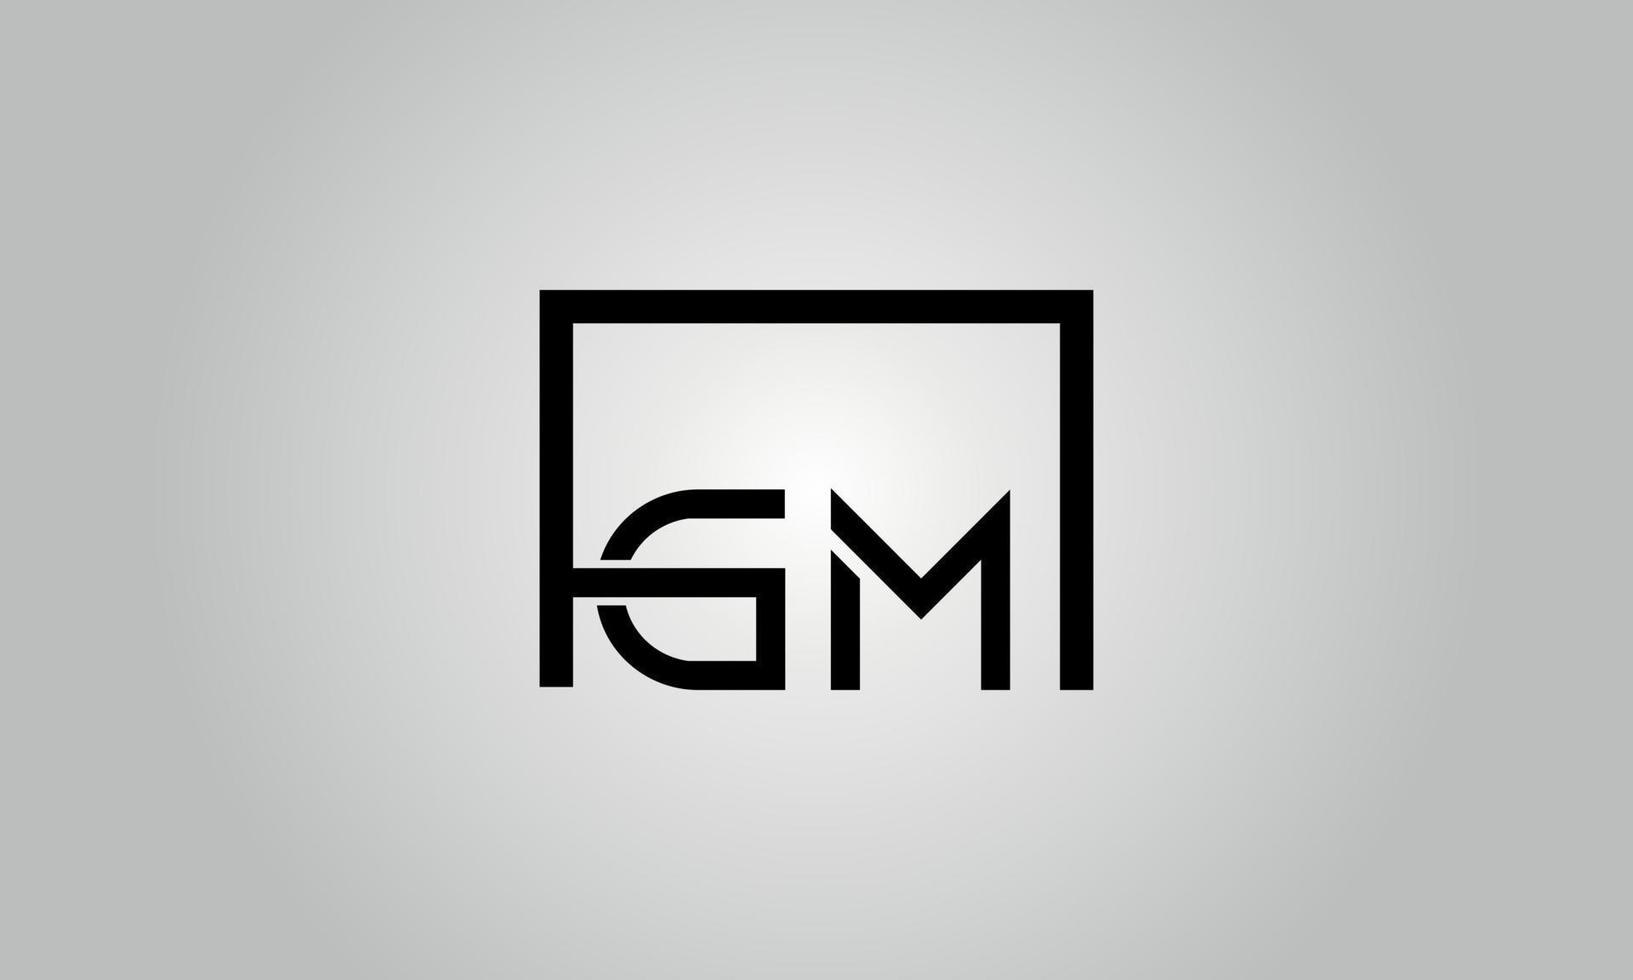 Buchstabe gm-Logo-Design. gm-logo mit quadratischer form in schwarzen farben vector kostenlose vektorvorlage.